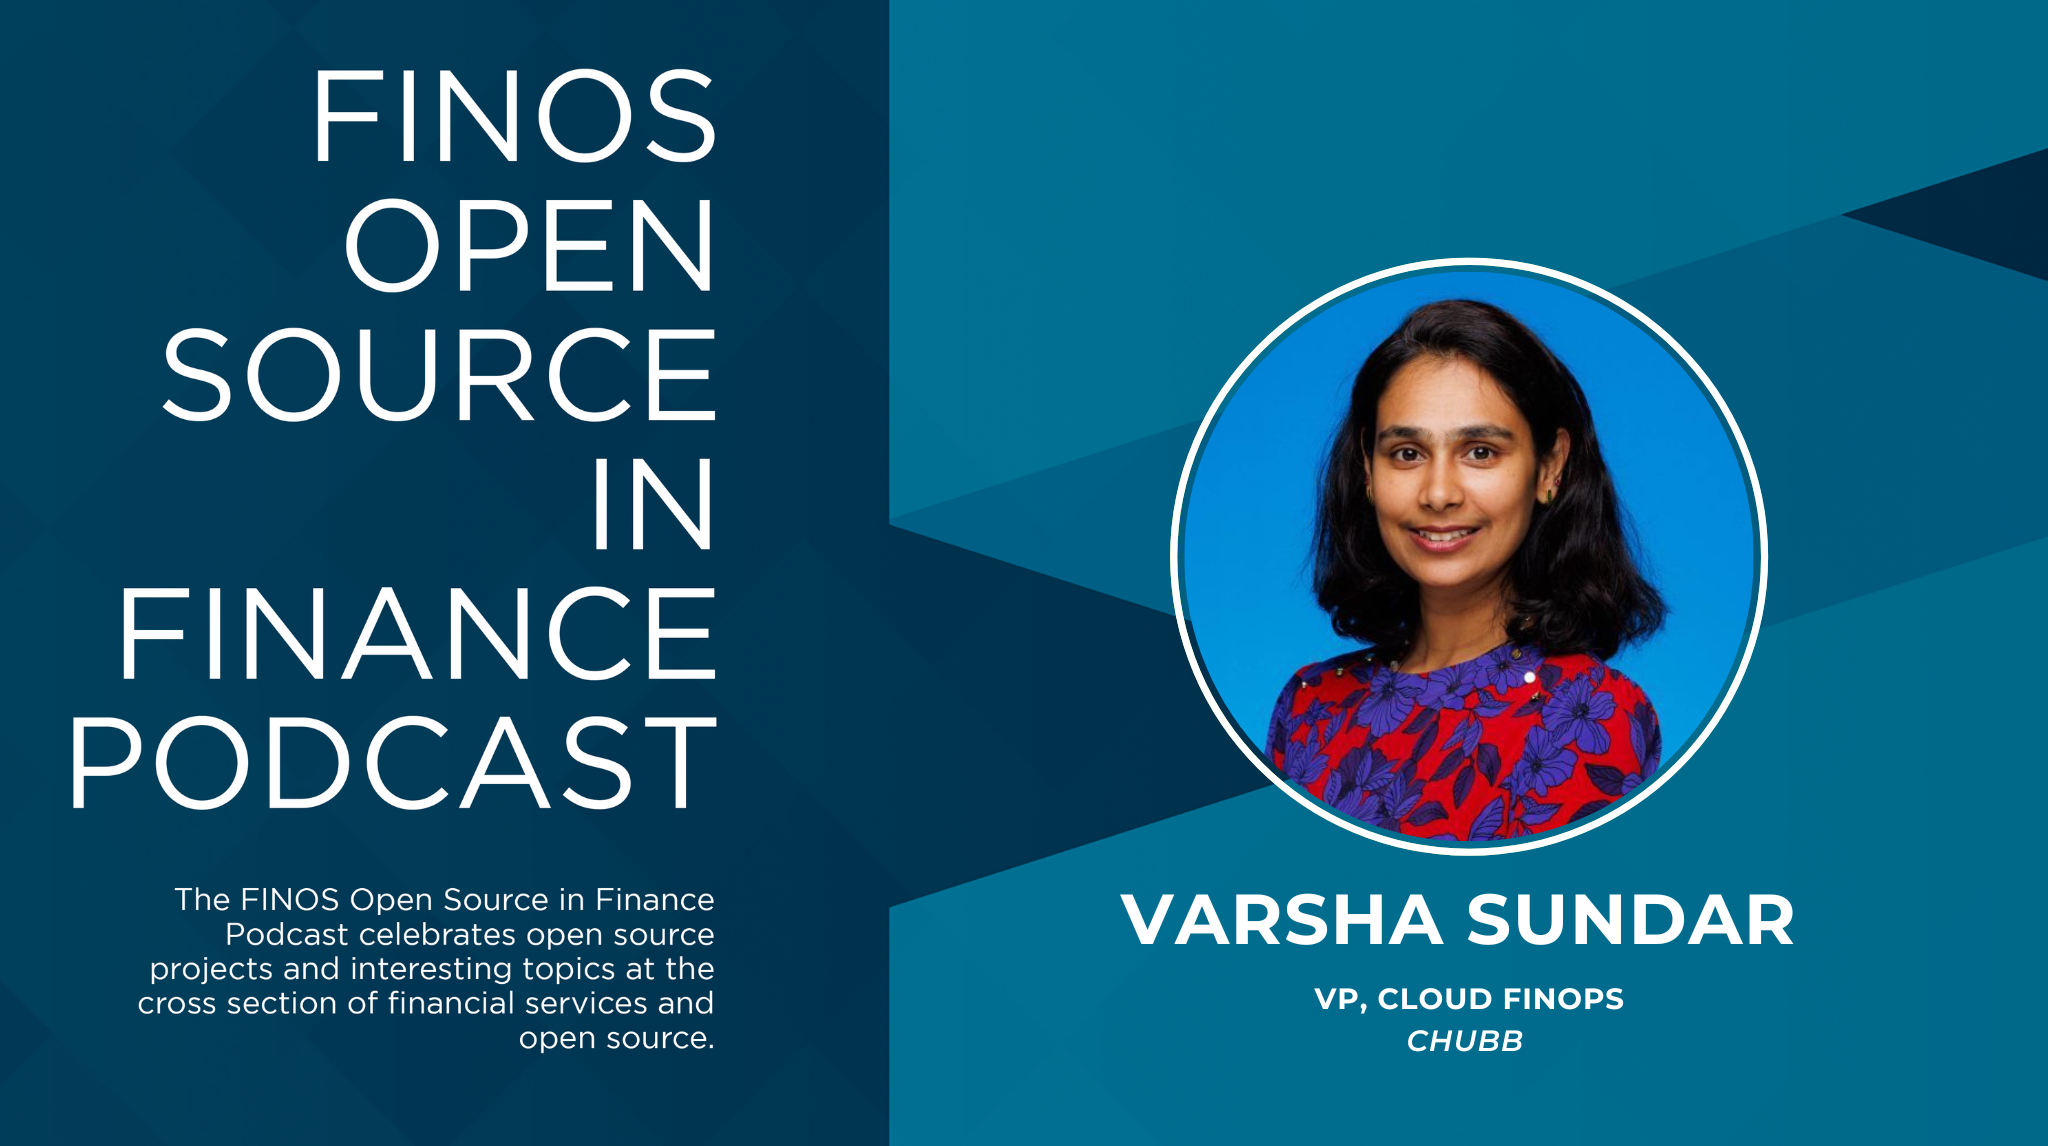 Open Source in Finance Podcast - Varsha Sundar